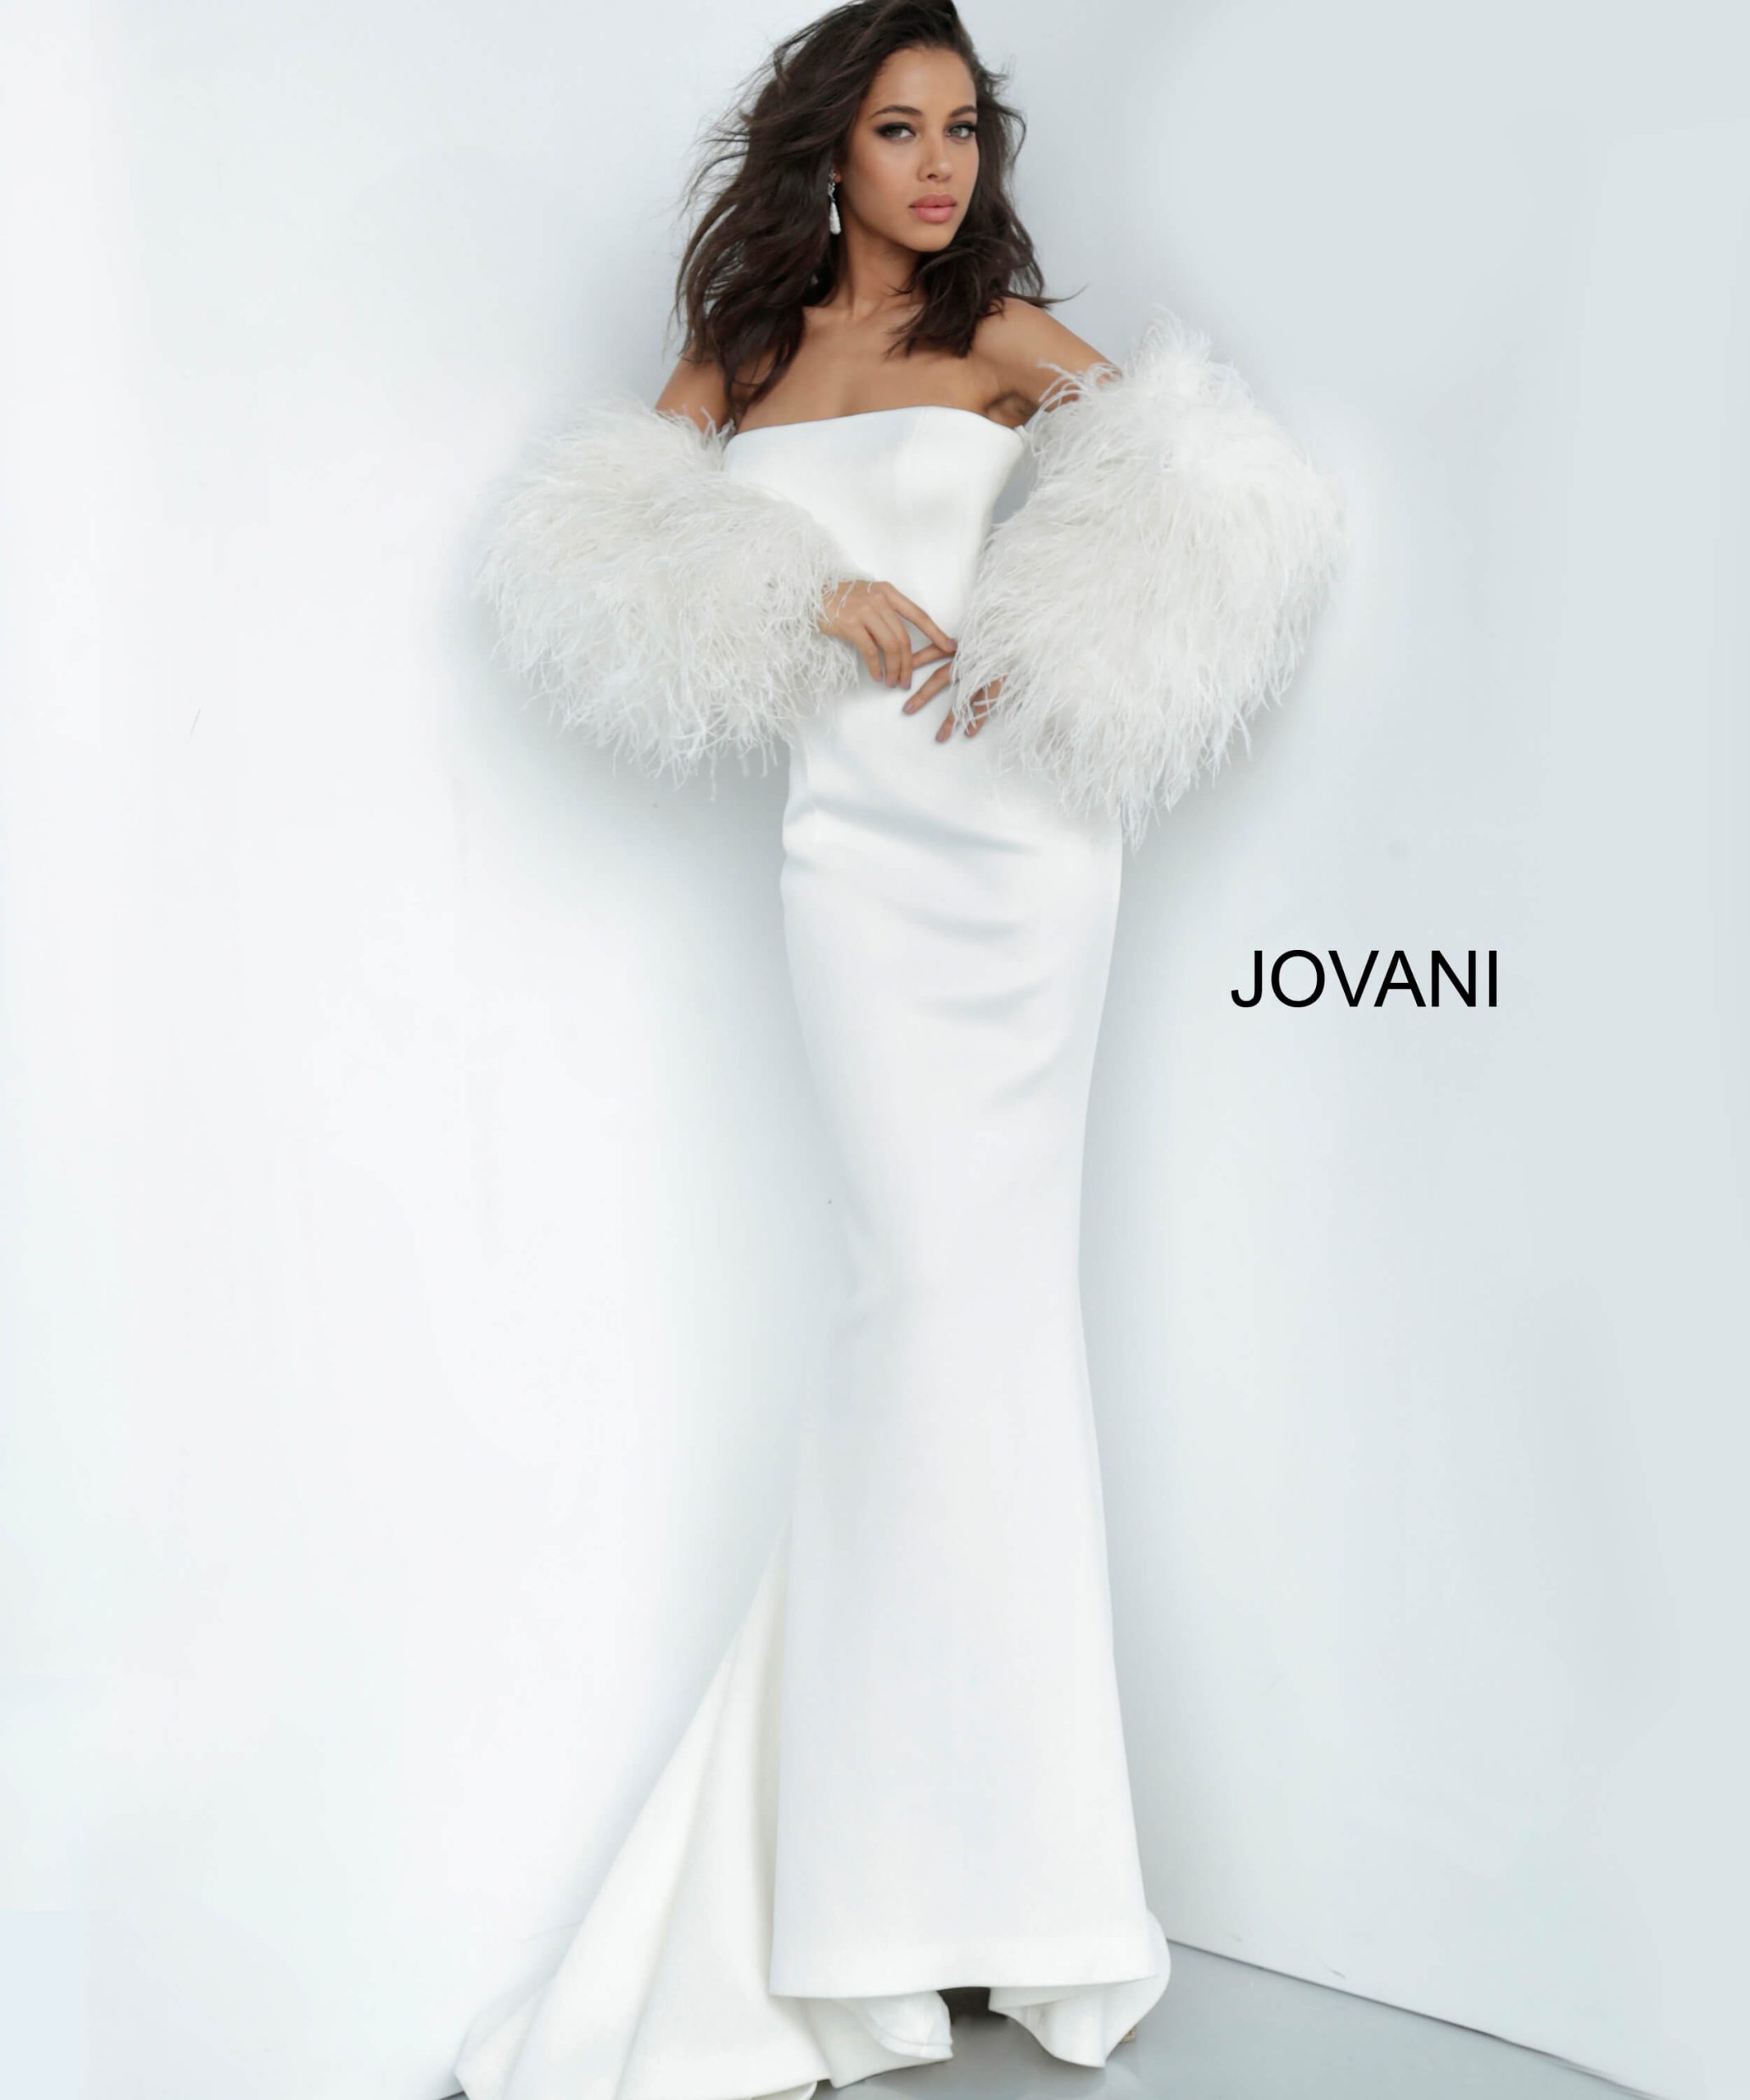 Jovani 1226 White Scuba Informal Bridal Gown